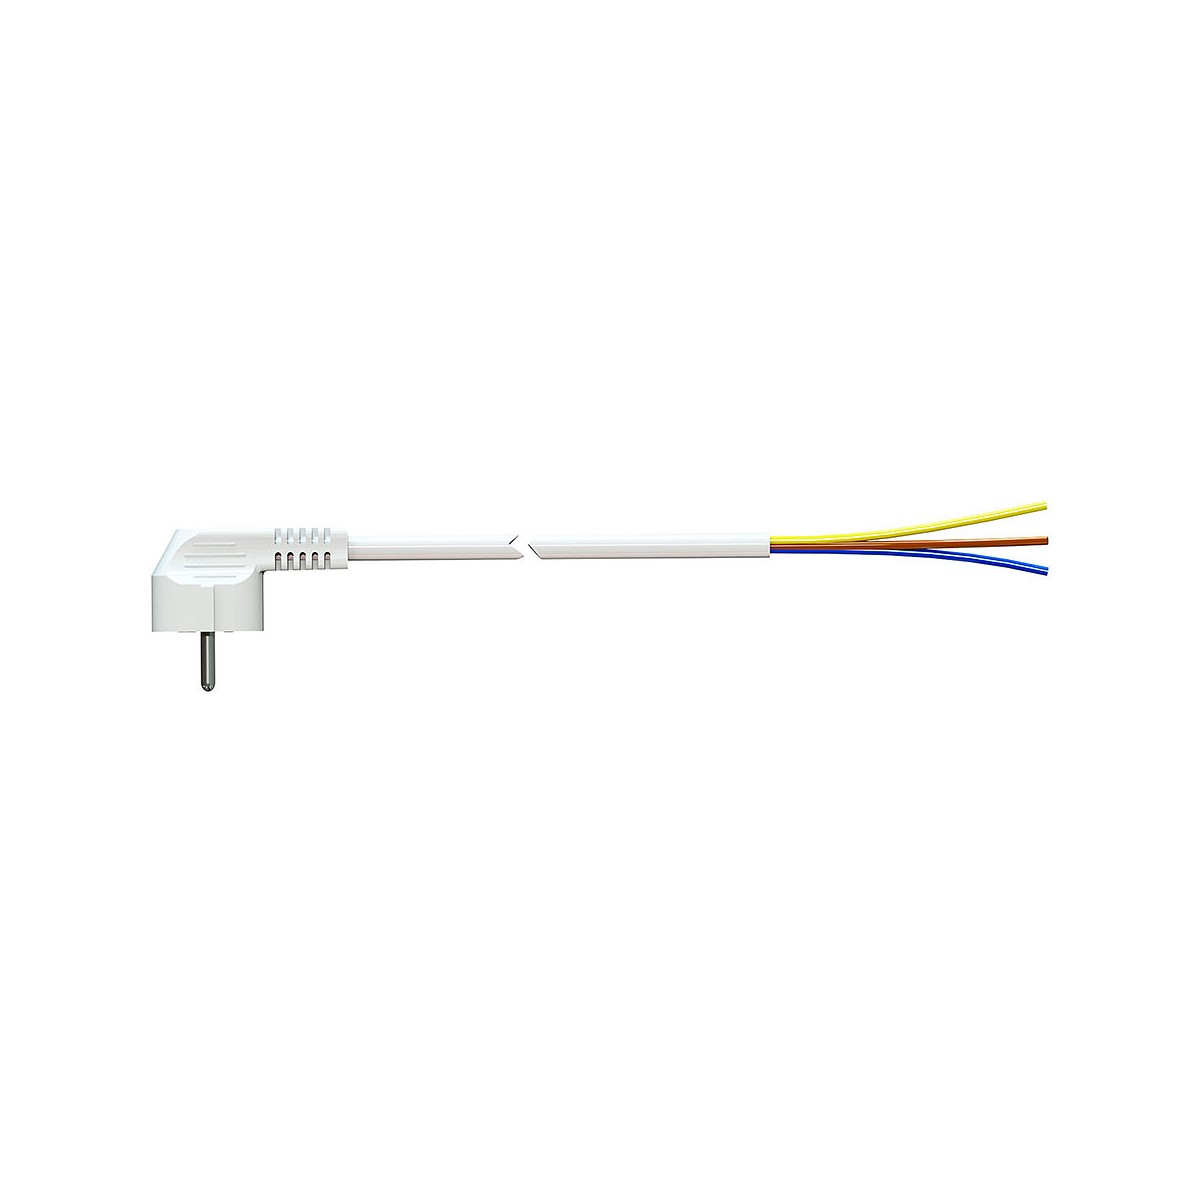 Cable con clavija schuko 5m 3x1,5mm 4,8mm 16a 250v t/tl blanco. solera 7000/5.